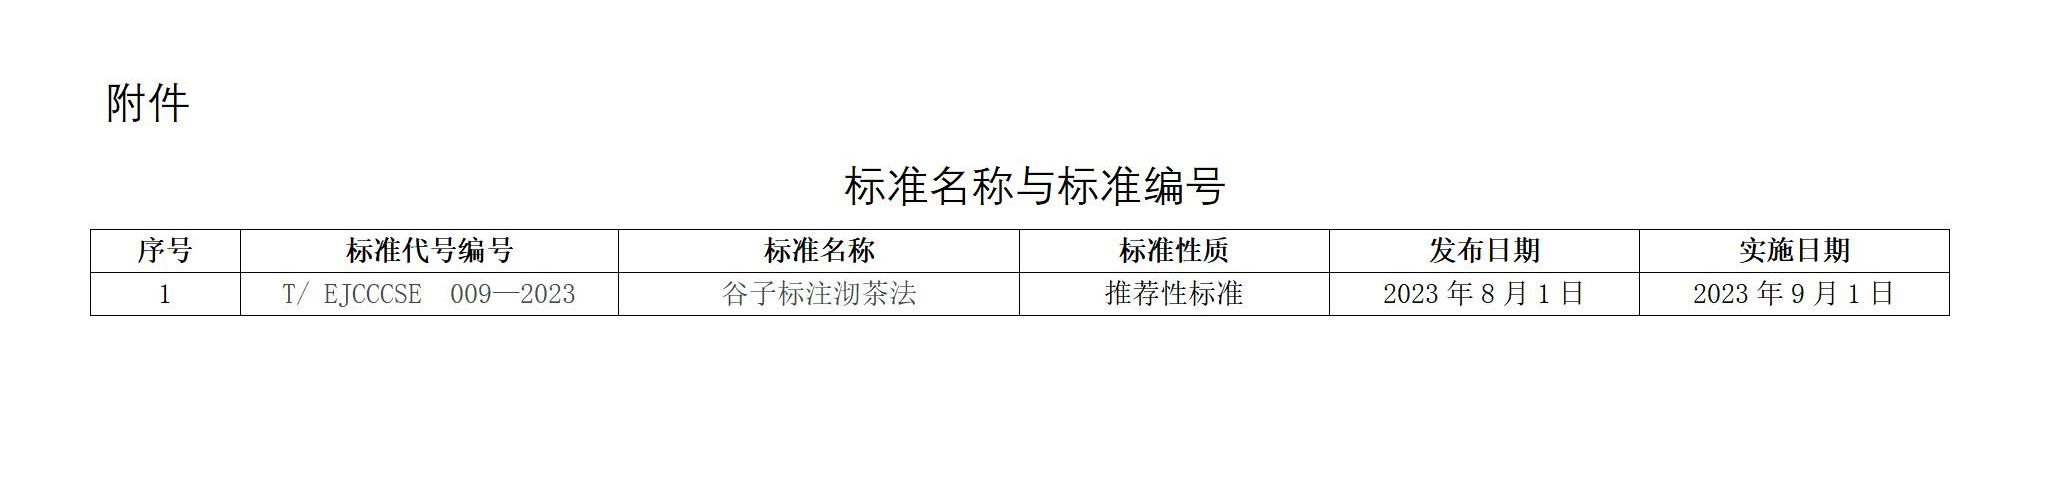 中经联秘字〔2022〕19号 中国商业股份制企业经济联合会关于发布《谷子标注沏茶法》团体标准的公告_02.jpg